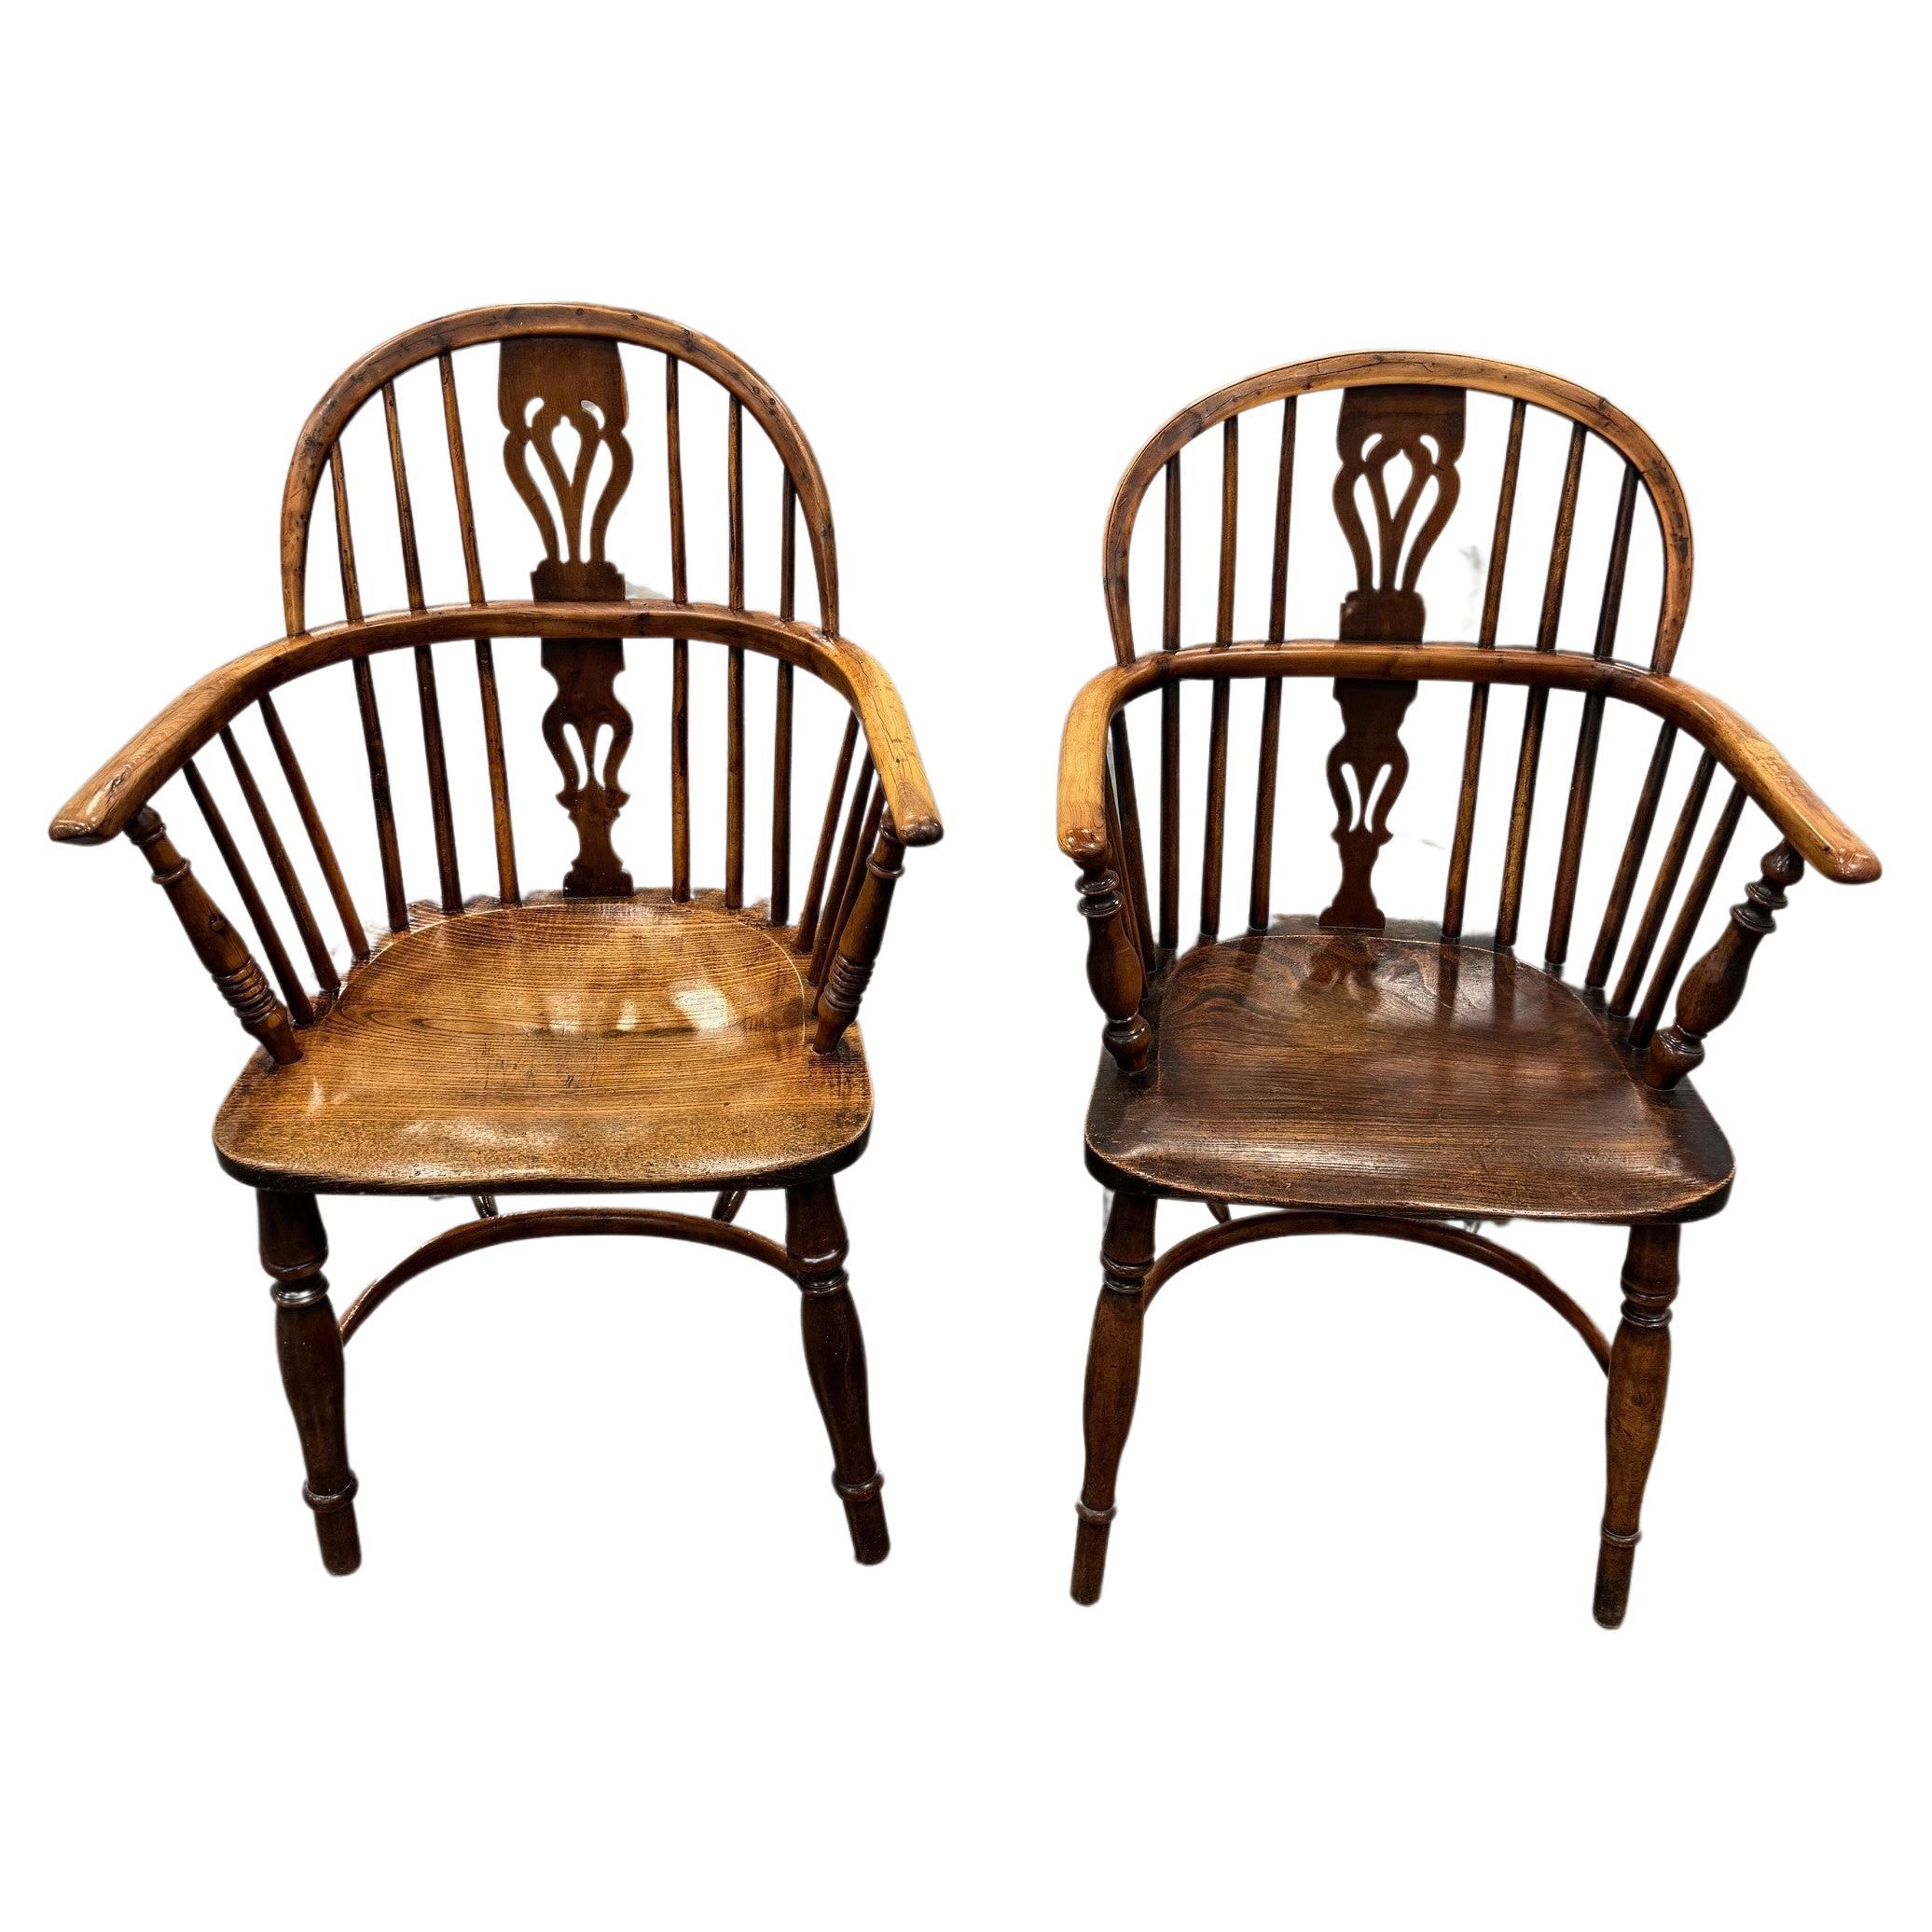 Zwei aufeinander abgestimmte frühe Windsor-Stühle aus Eibenholz mit niedriger Rückenlehne